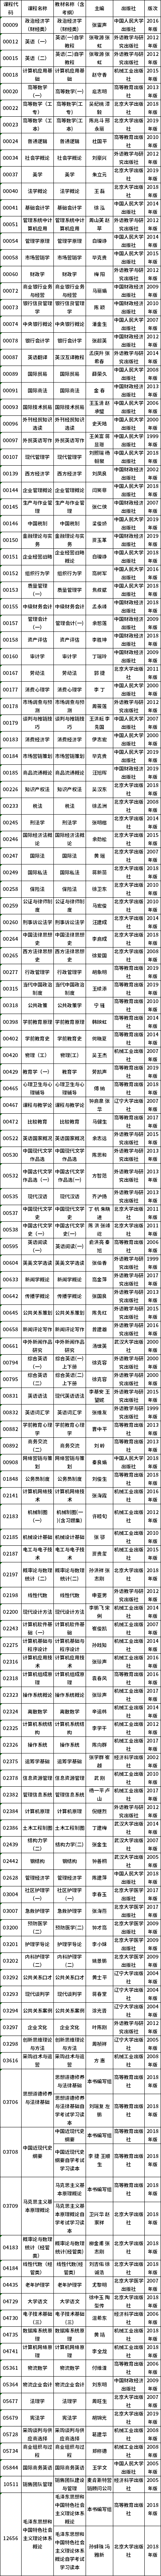 2021年4月上海市高等教育自学考试全国统考课程教材考纲书目表